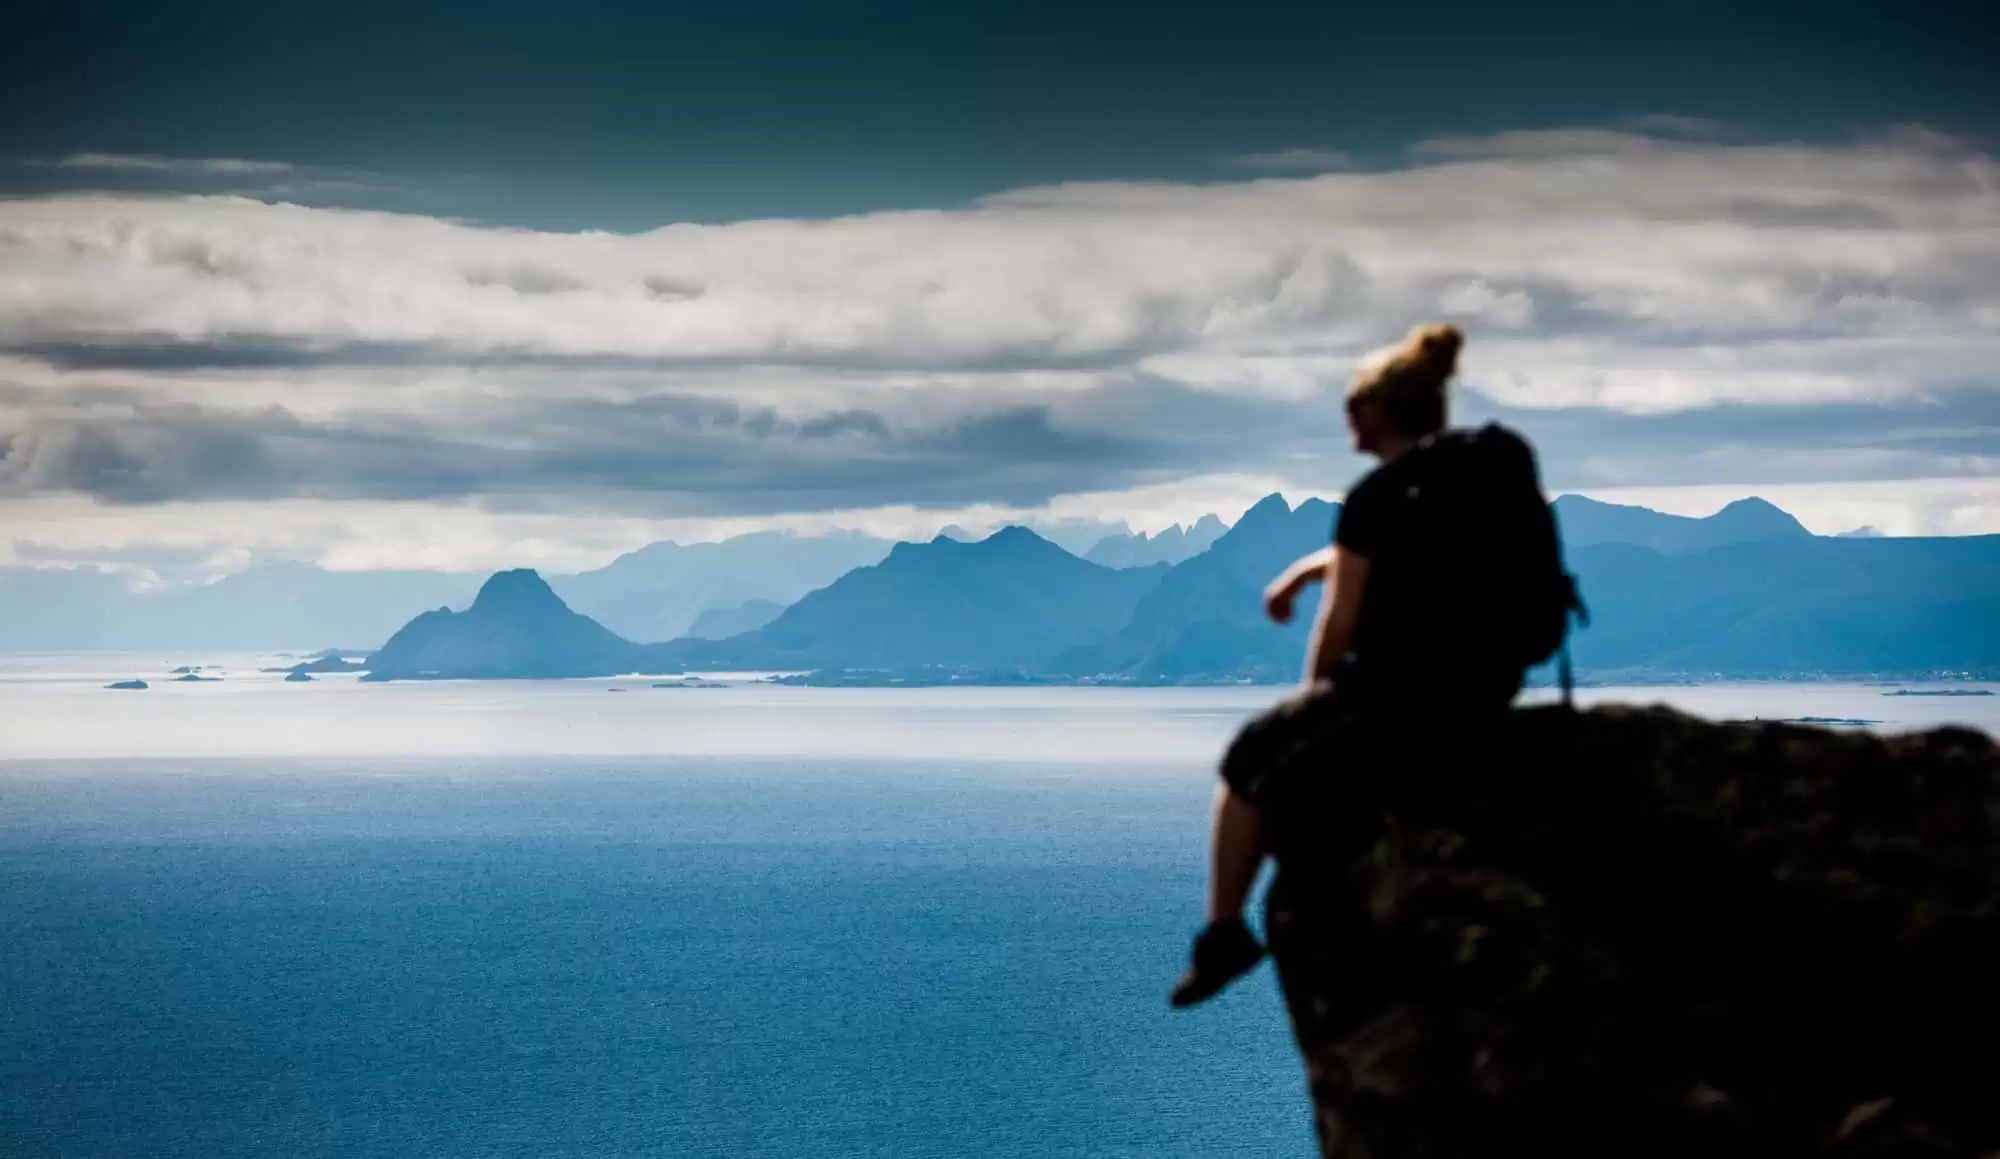 utsikt-opplevelsesuke-i-lofoten-henningsvaer-fjelltur-surfing-fiske-rib-safari-kultur-kulinarisk-norwegian-adventure-company-02.jpg – Norwegian Adventure Company